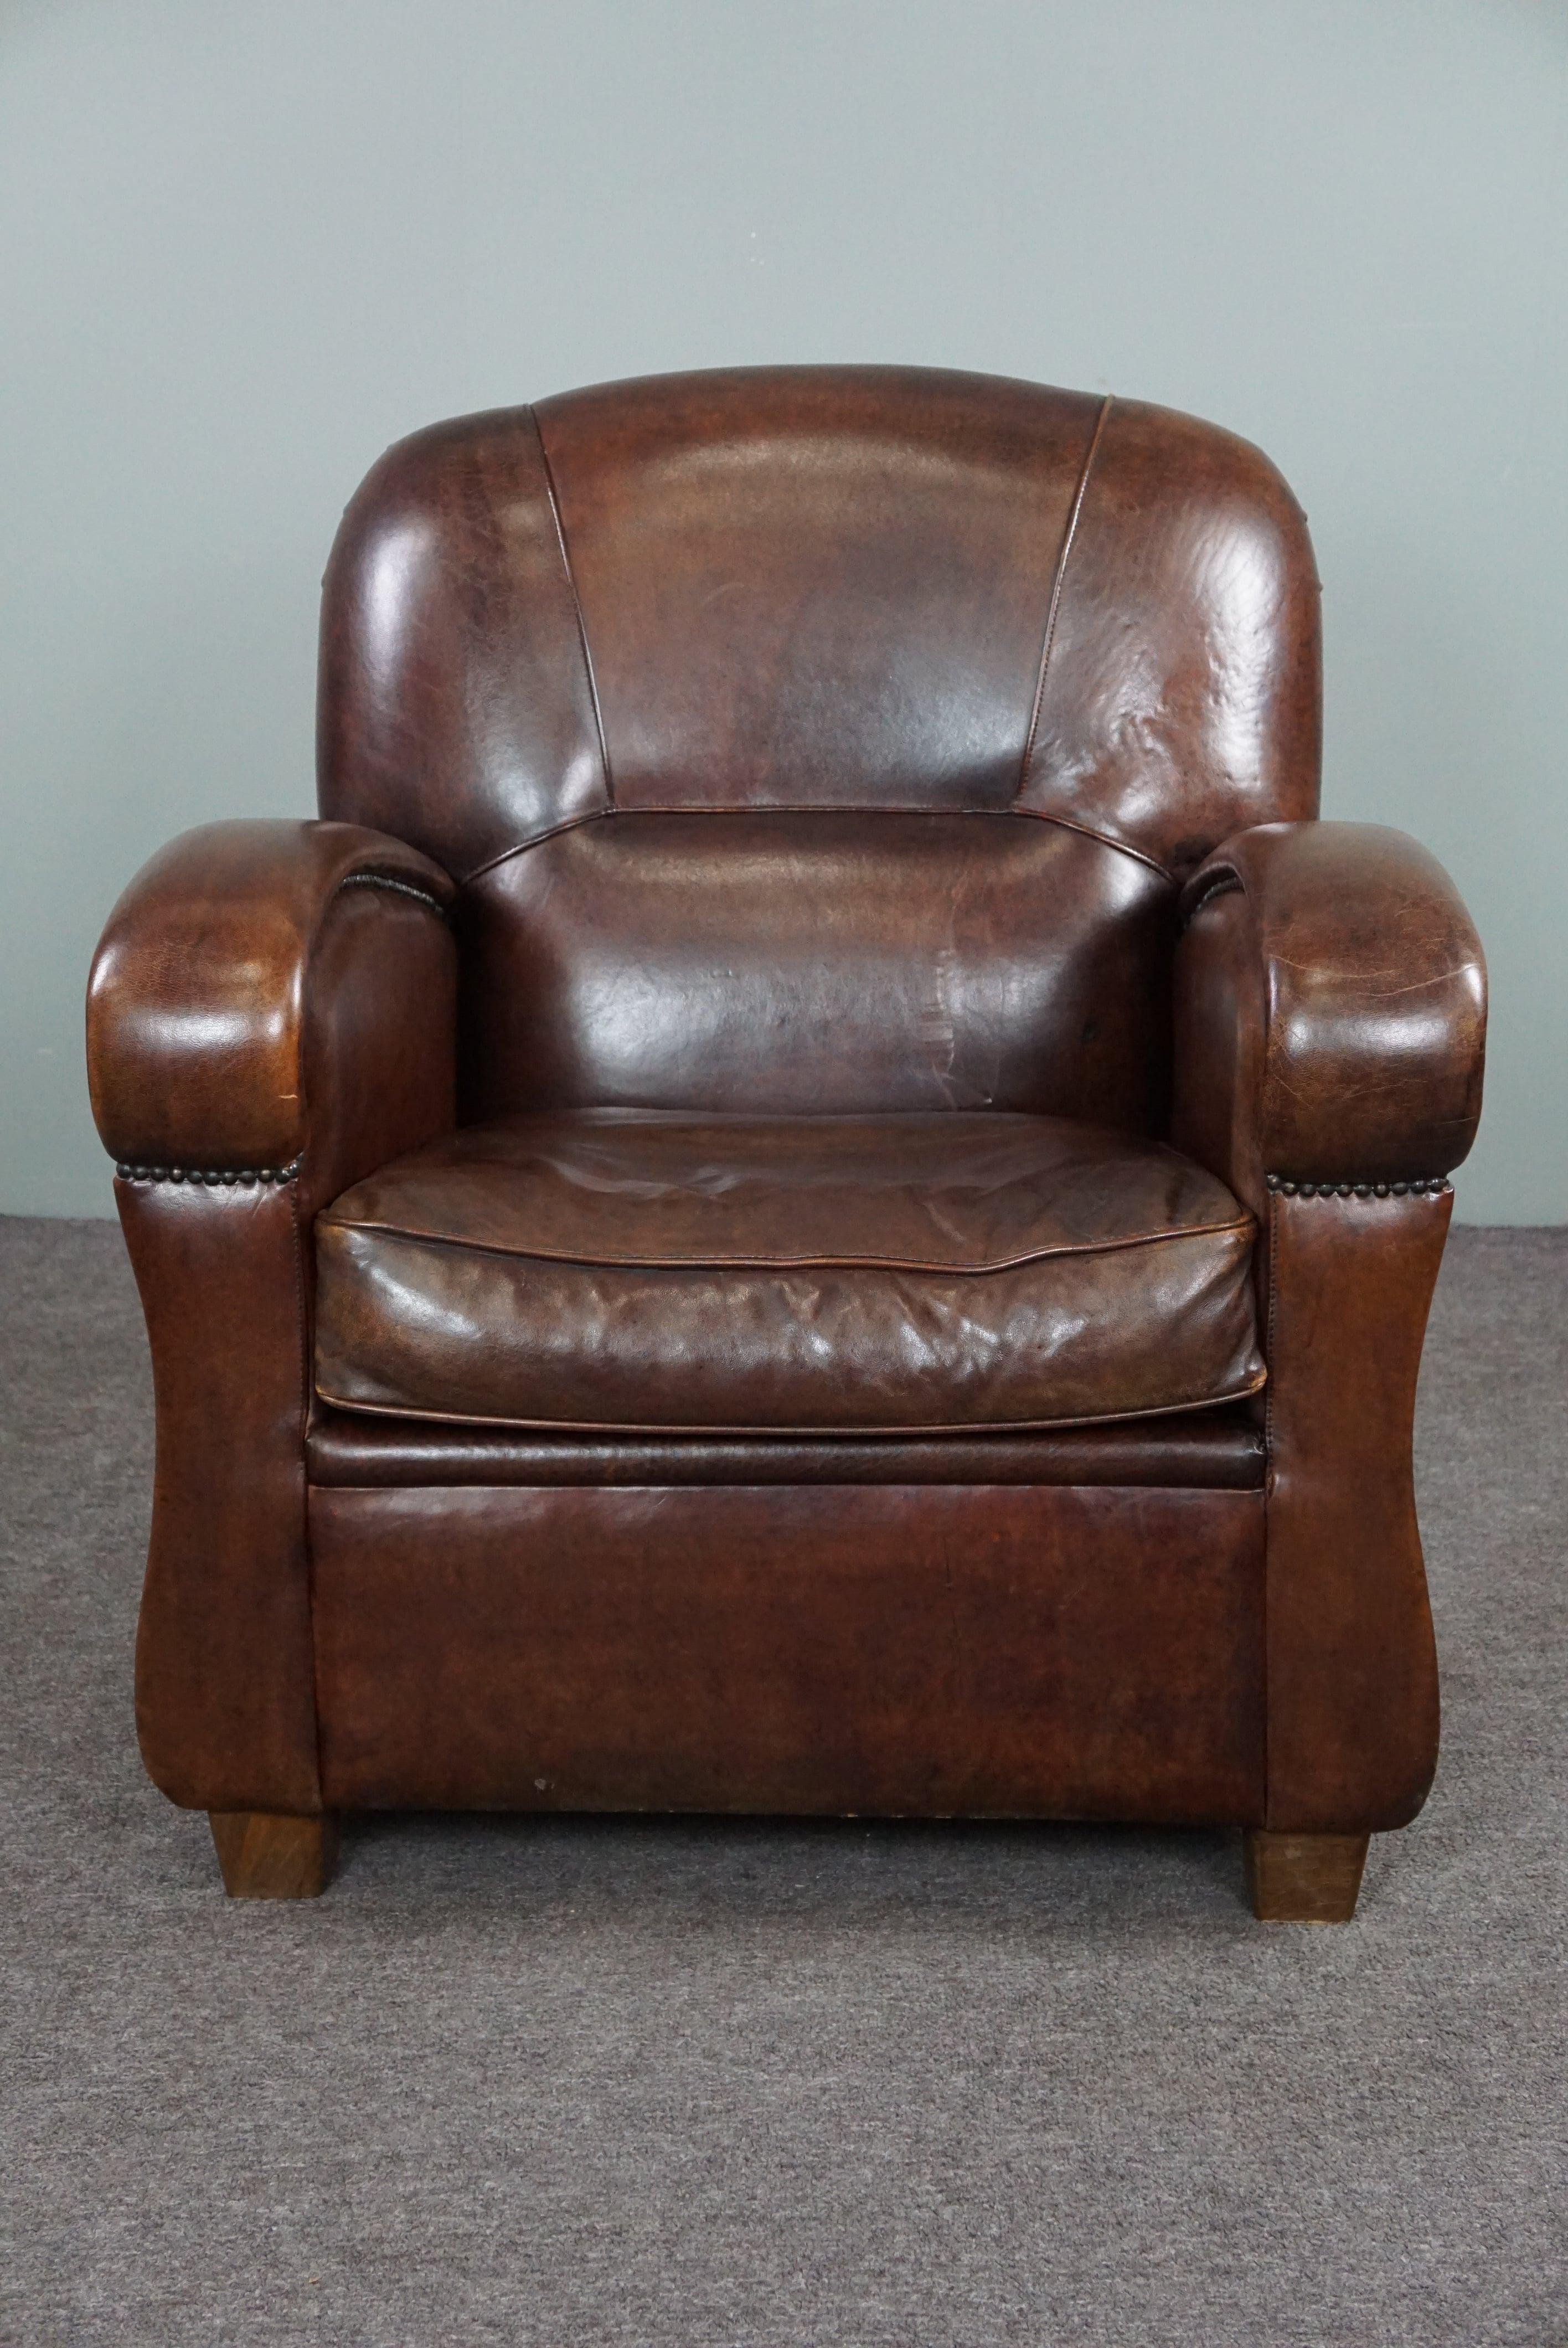 Angeboten wird dieser schöne, geräumige Schafsfell-Sessel.

Dieser Sessel bietet einen sehr guten Sitzkomfort und hat ein schönes, schlankes Design.
Die warme Farbe des Schafsleders und die schlichte Ausführung mit Ziernägeln machen diesen Sessel zu